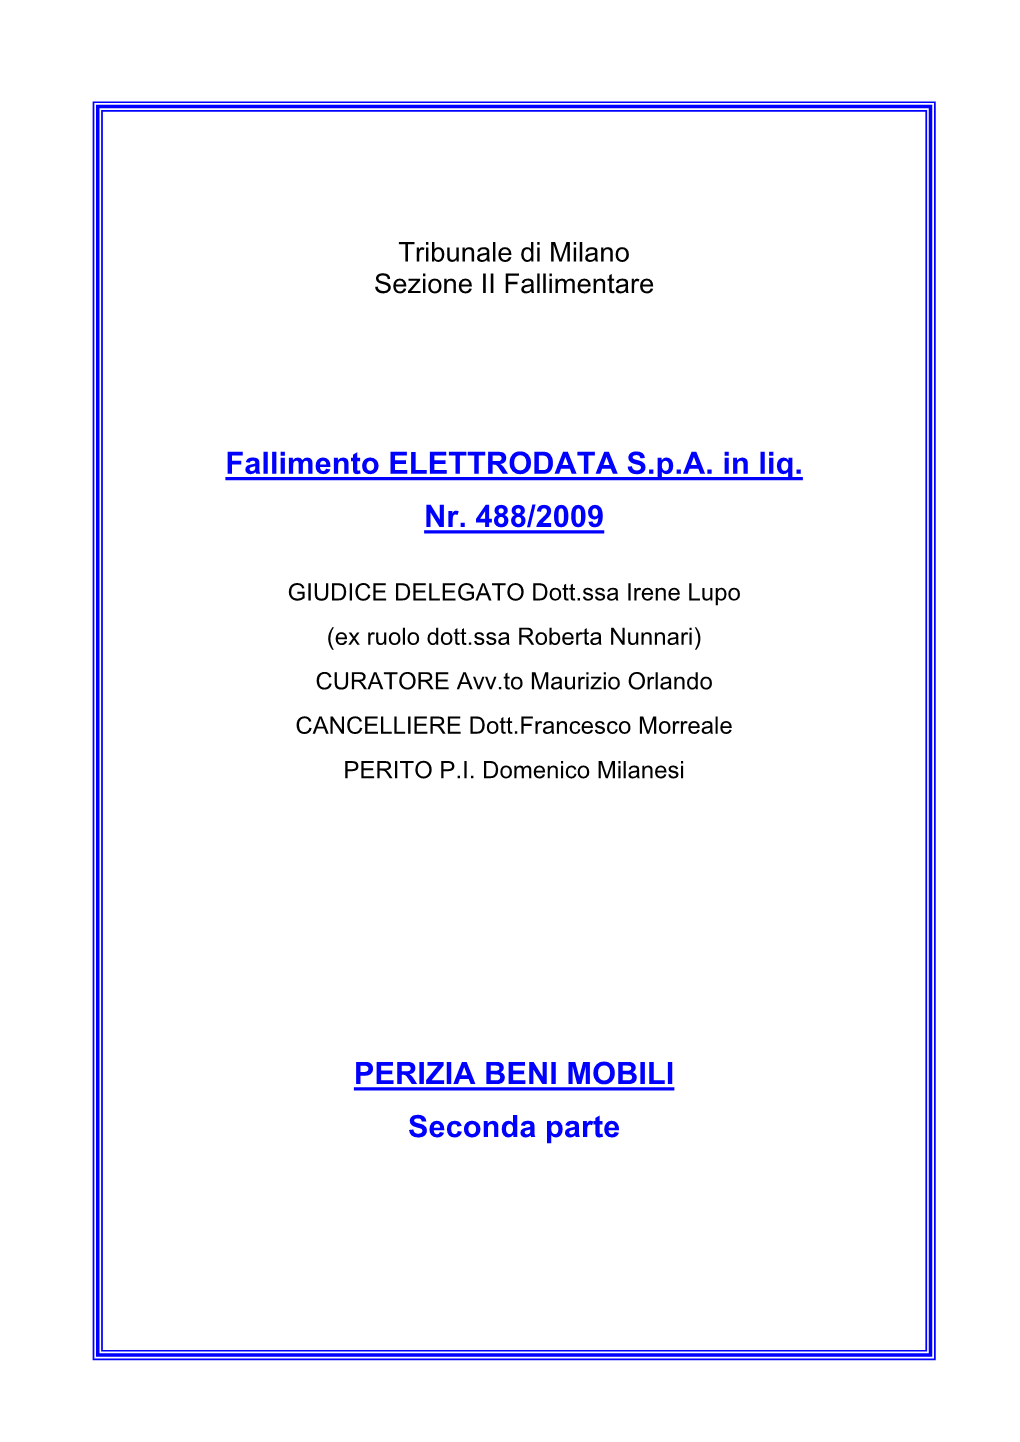 Fallimento ELETTRODATA S.P.A. in Liq. Nr. 488/2009 PERIZIA BENI